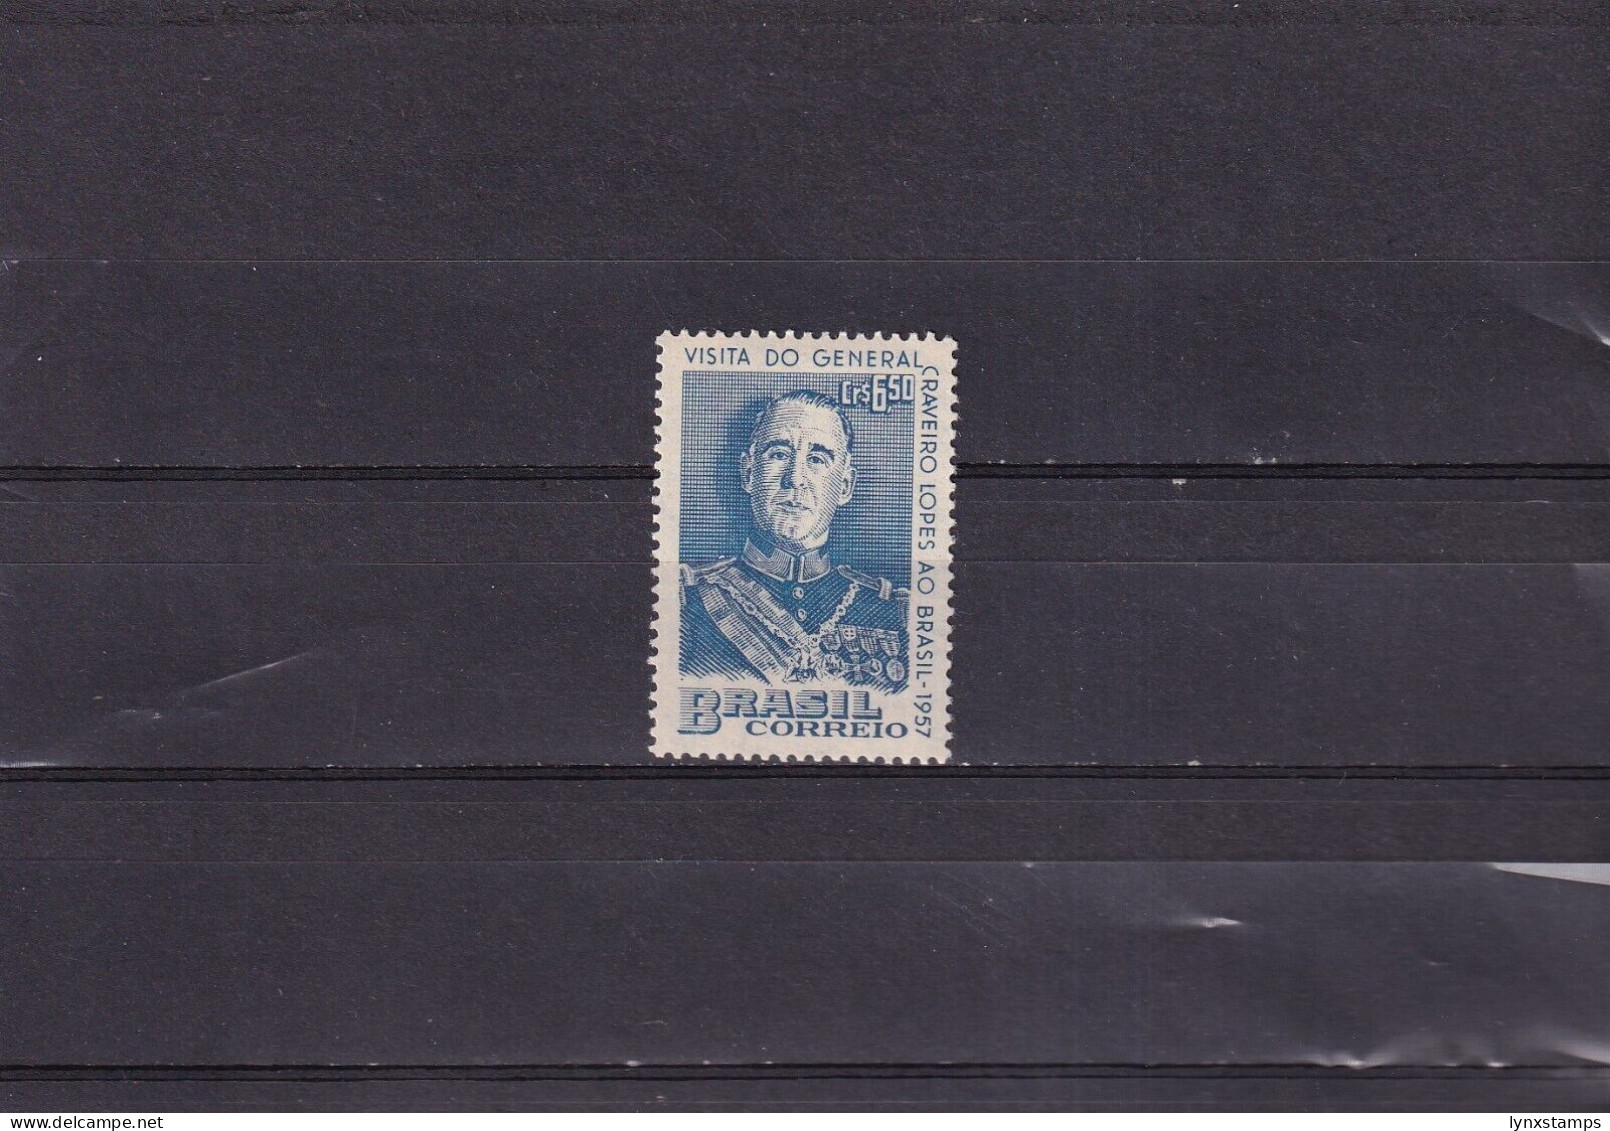 ER03 Brazil 1957 Visit Of Portugal's President - MNH Stamp - Neufs